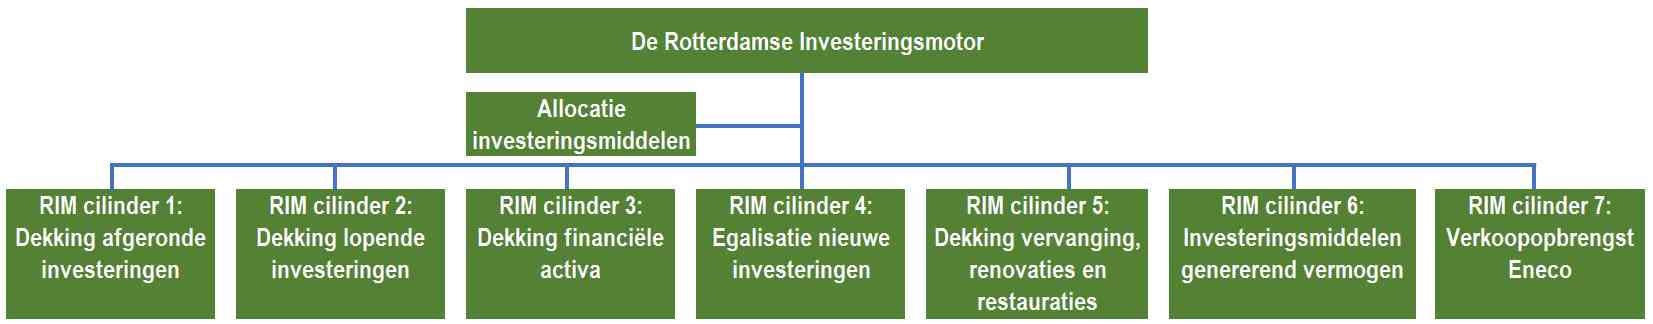 Grafische weergave opbouw van de Rotterdamse Investeringsmotor